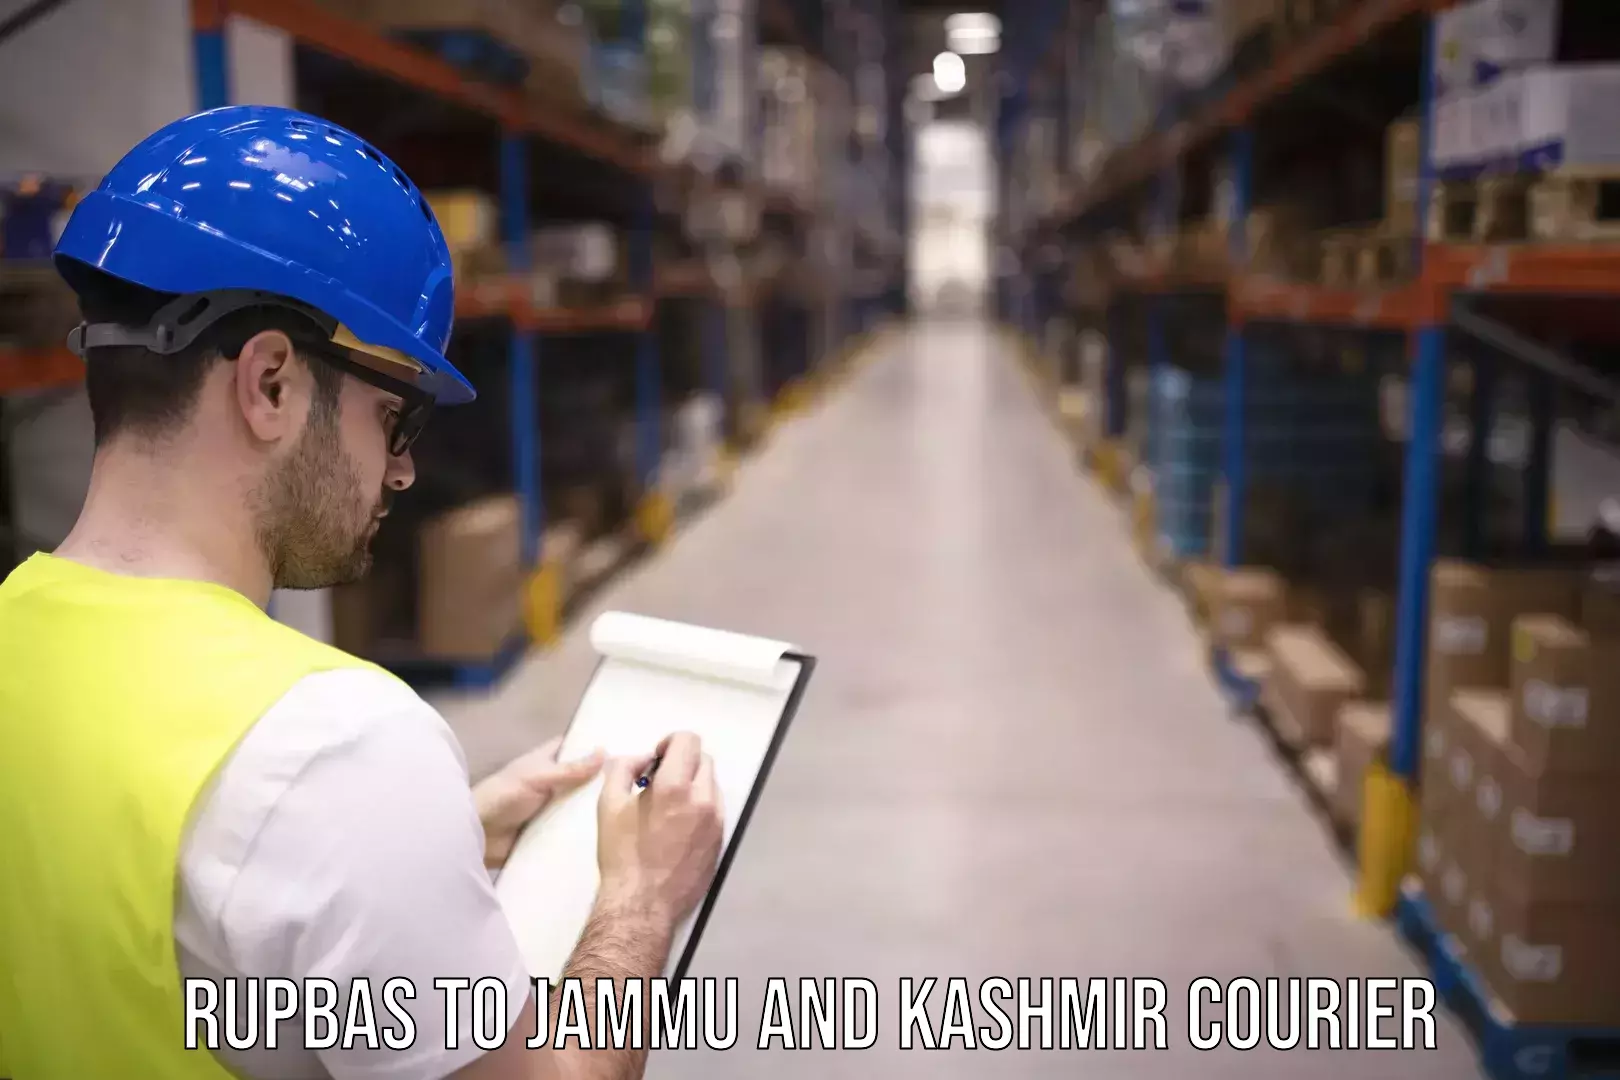 Courier app Rupbas to Jammu